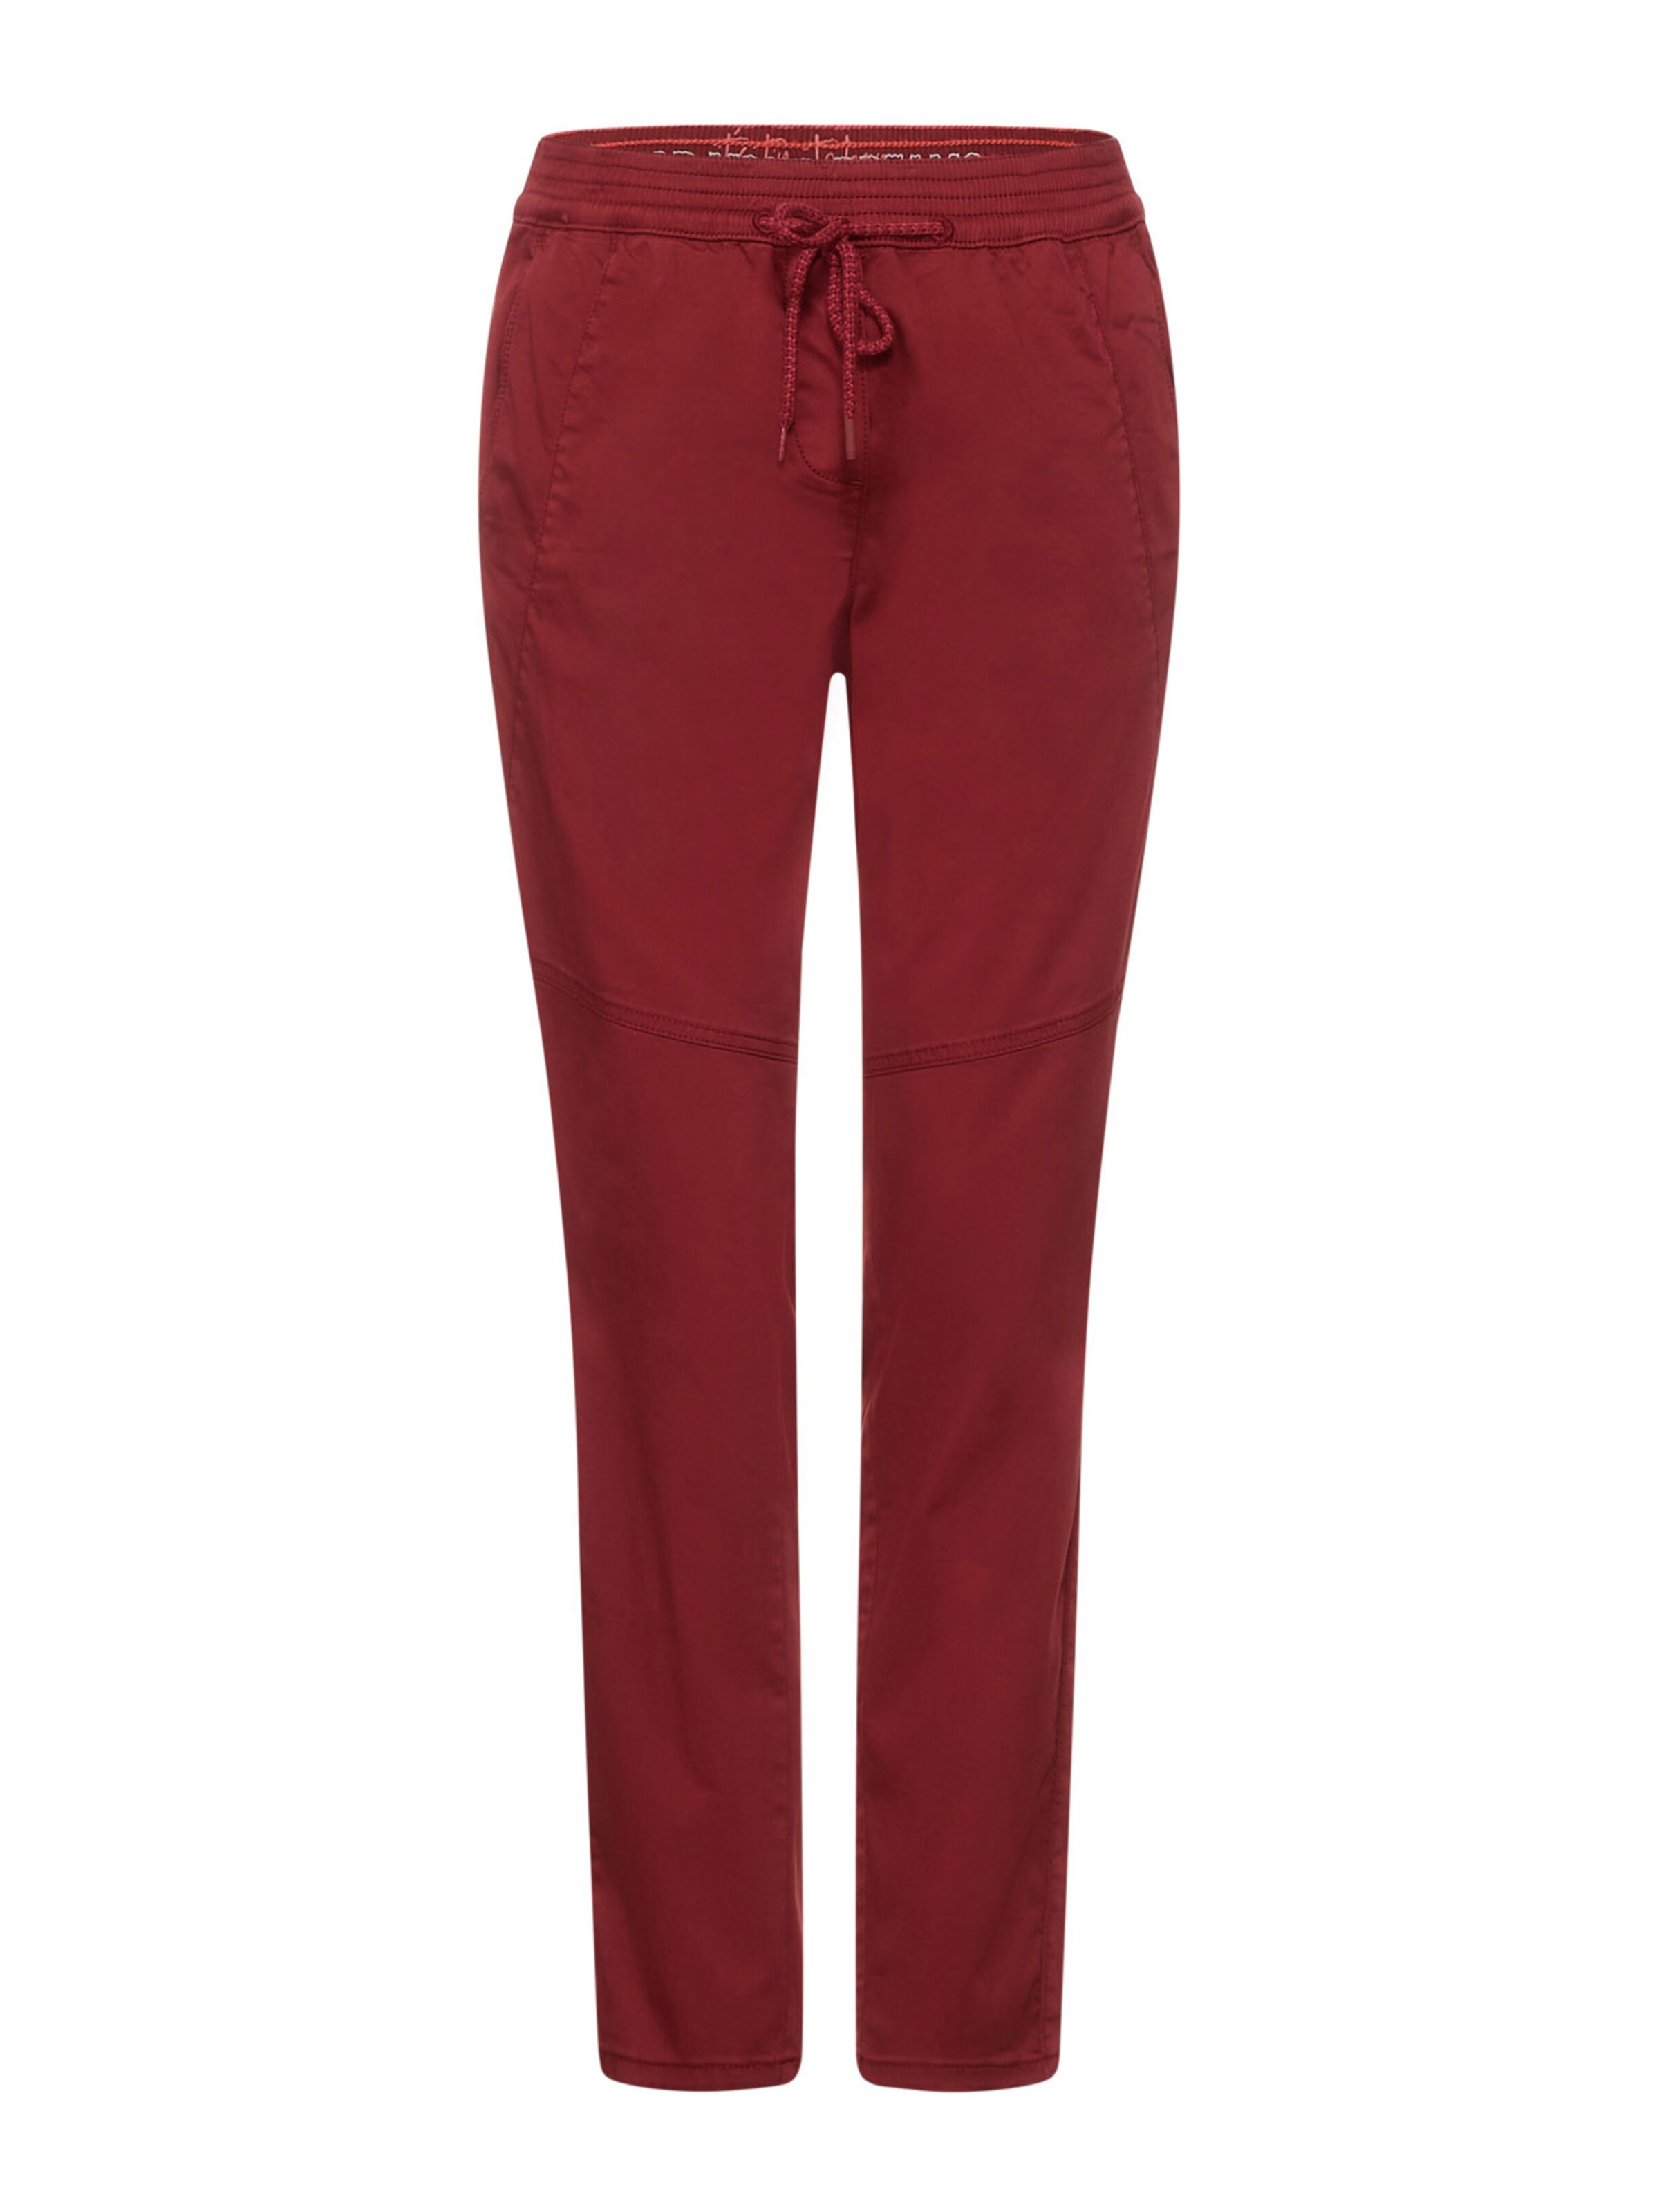 Abbigliamento Donna CECIL Pantaloni in Rosso Ruggine 